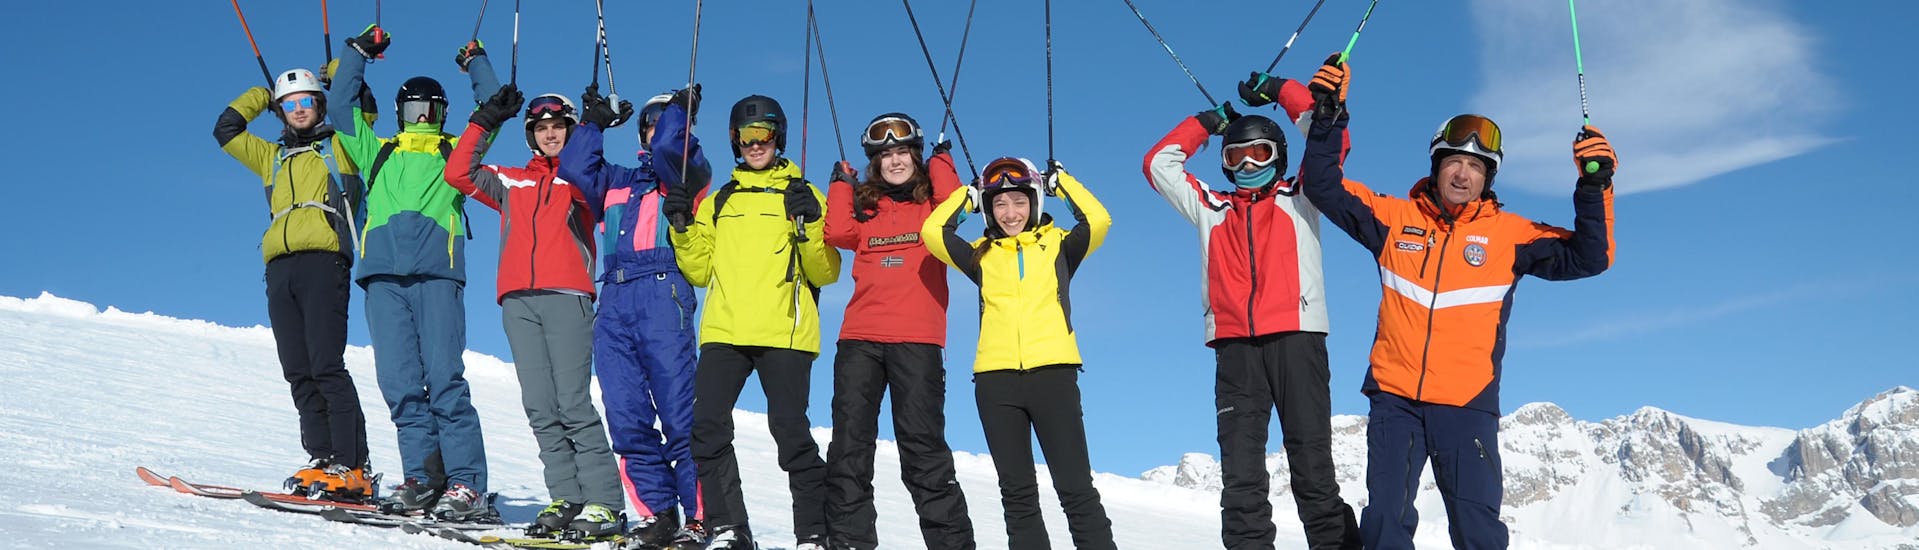 Die Teilnehmer sind glücklich in Falcade während einer der Erwachsenen-Skikurse für alle Levels.